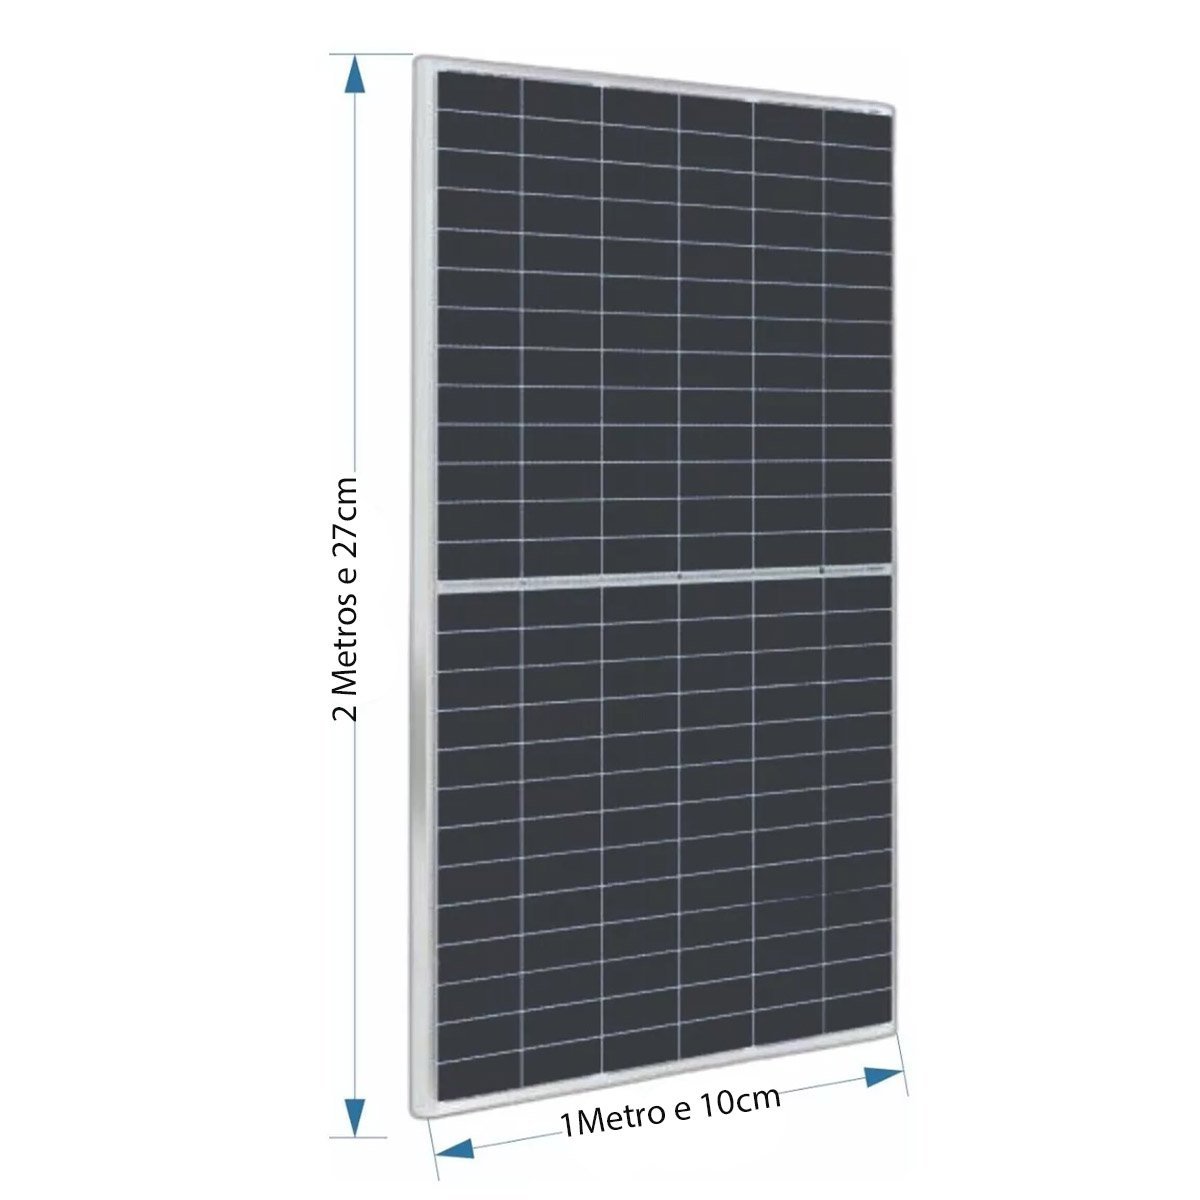 Painel Solar Placa Fotovoltaica 550W 2 Metros Monocristalino Energia Renovavel Economia Solar SA1821 - 3